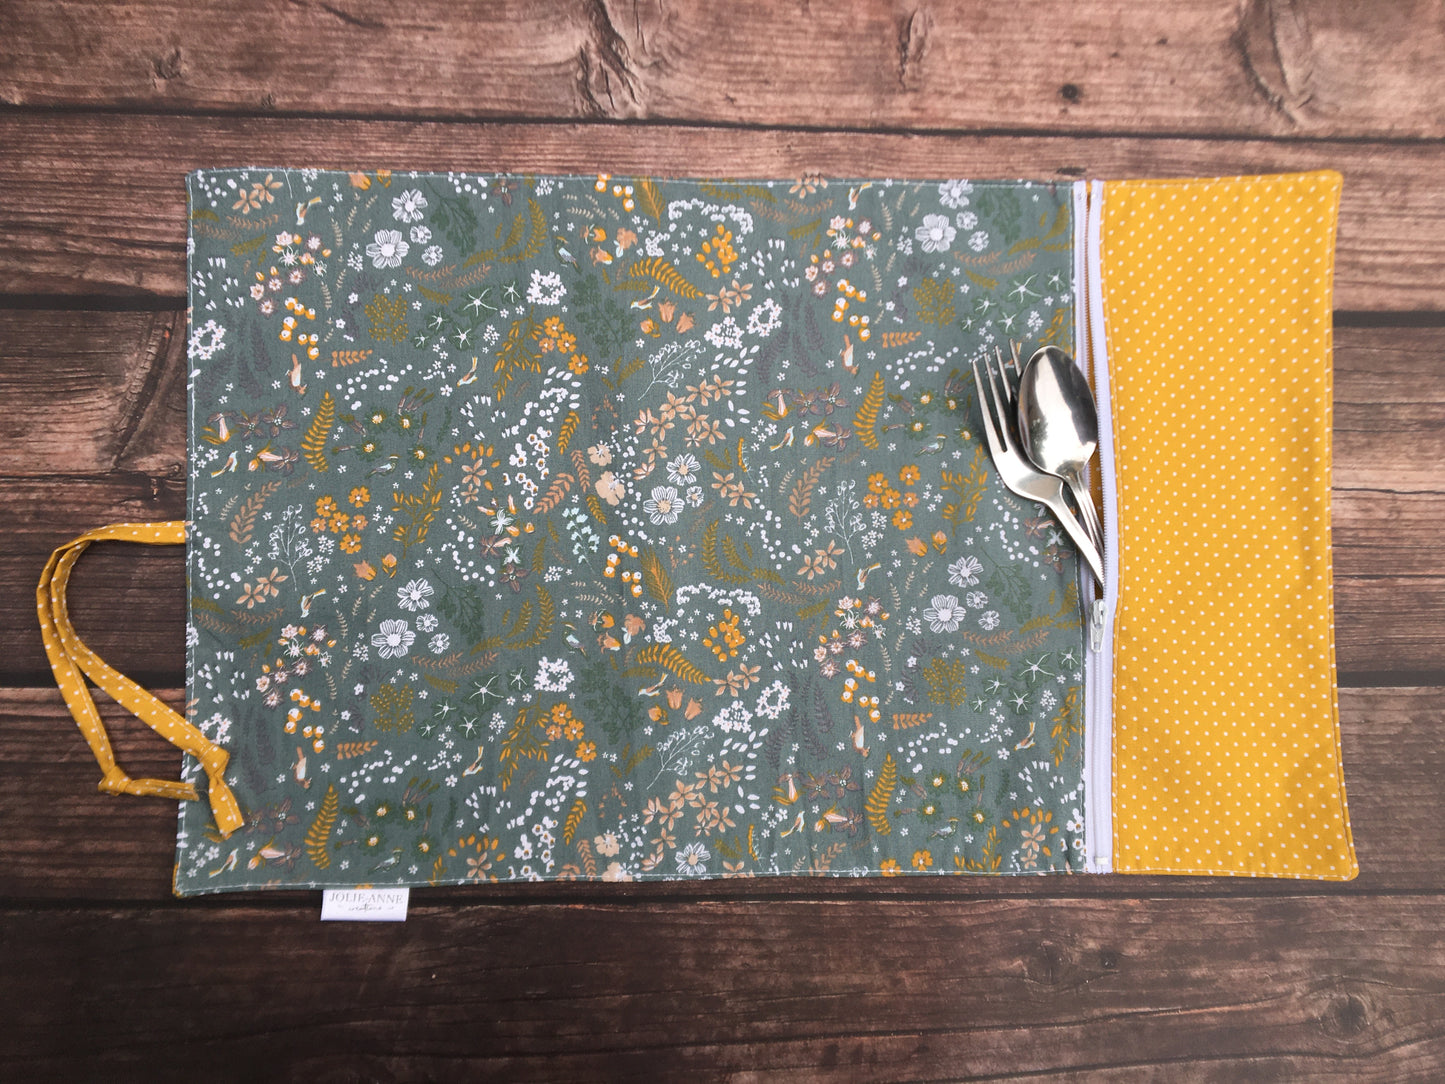 Napperon floral pois, napperon avec pochette, lunch, zéro-déchet, idée cadeau, napperon réutilisable